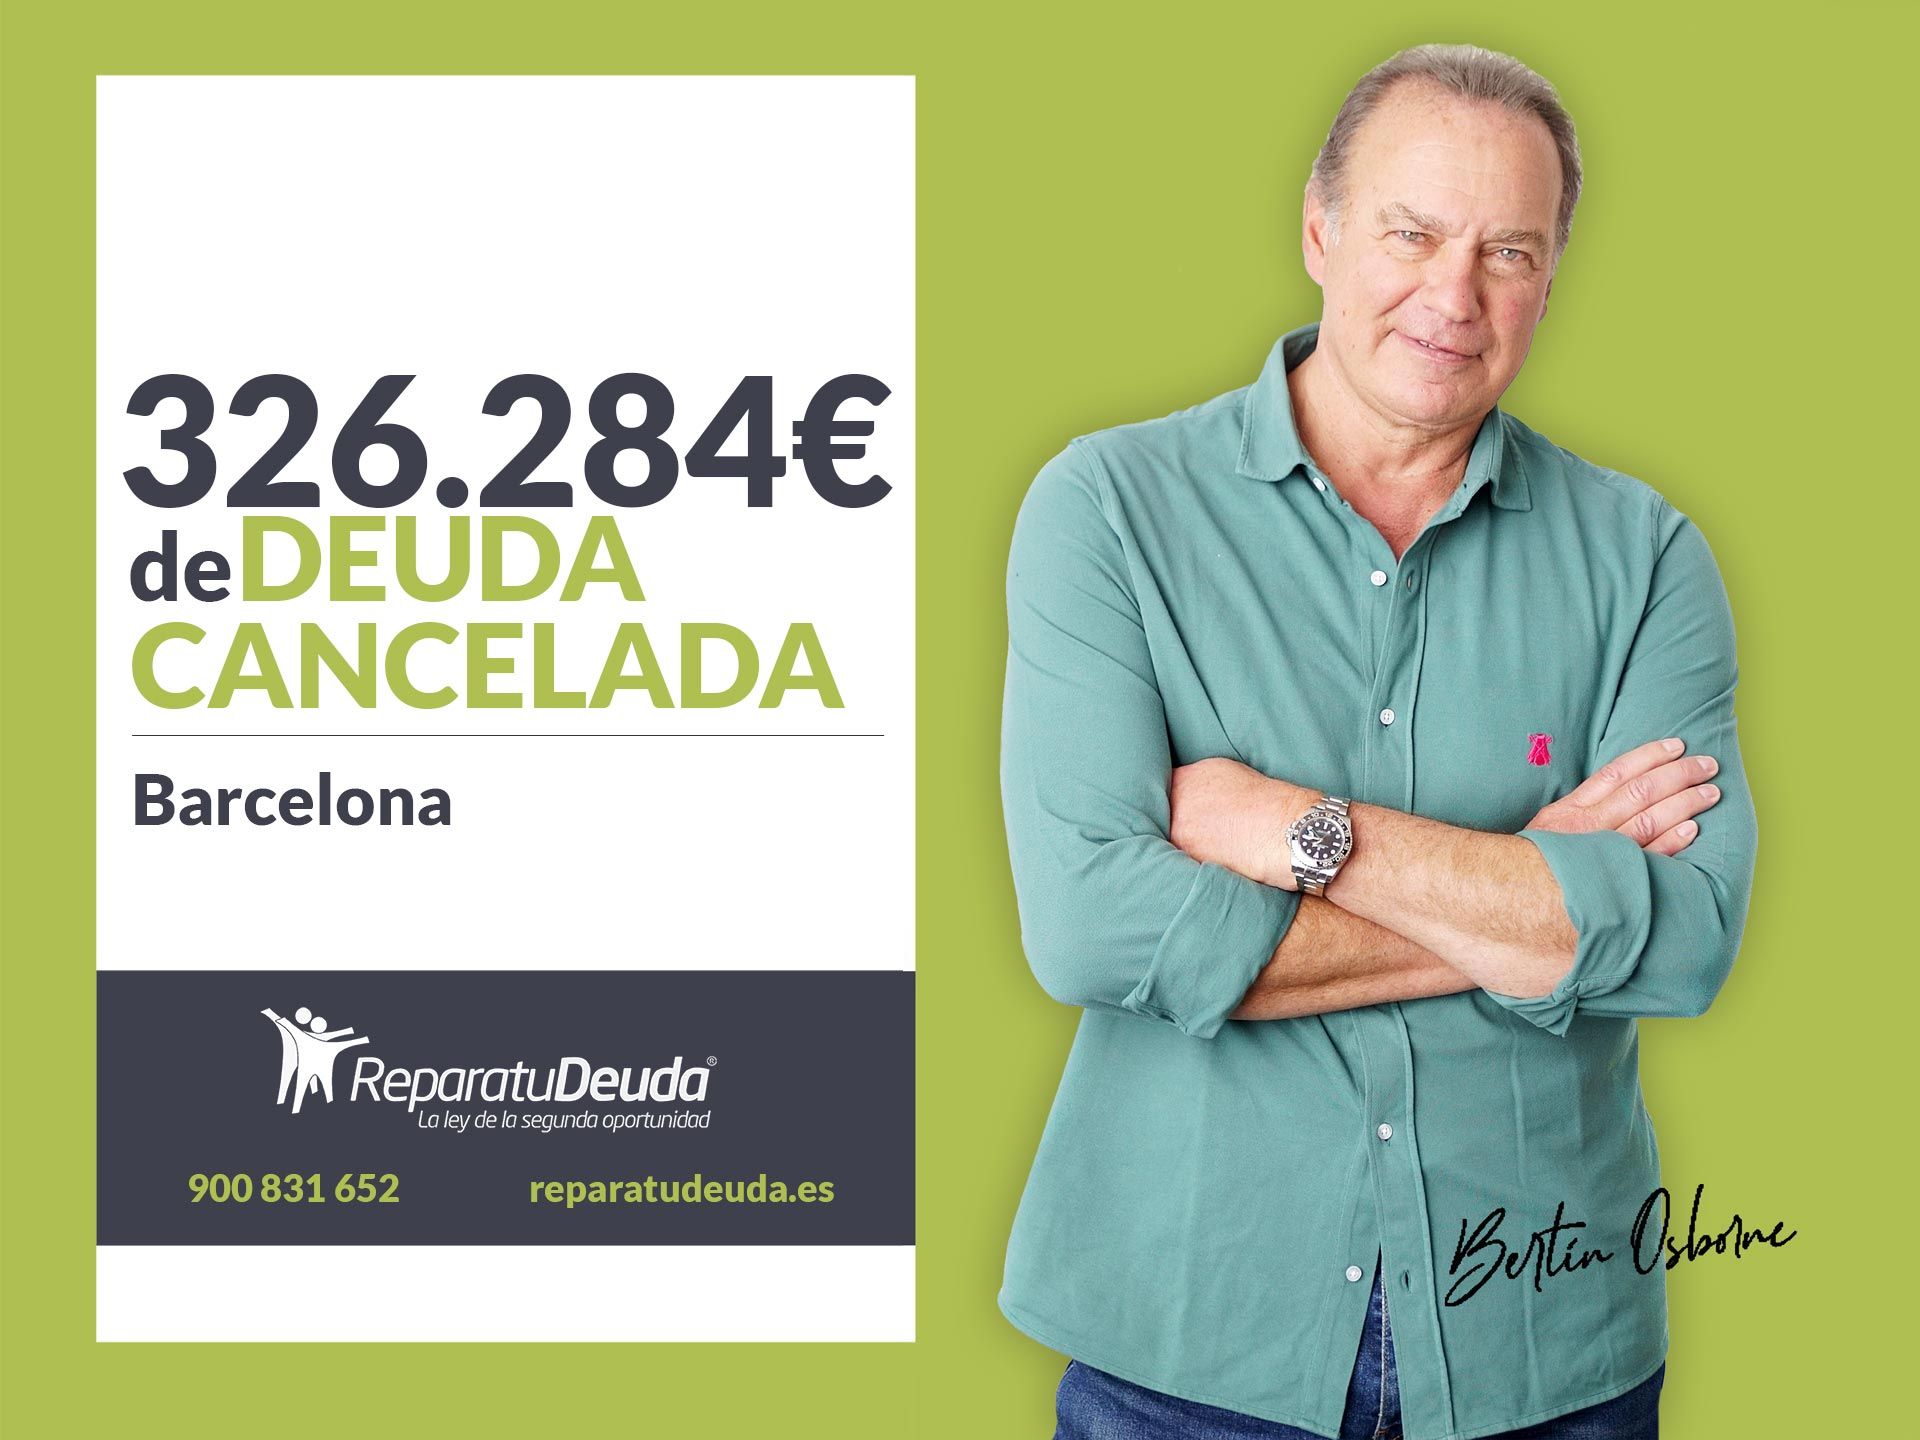 Repara tu Deuda Abogados cancela 326.284? en Barcelona (Catalunya) con la Ley de Segunda Oportunidad